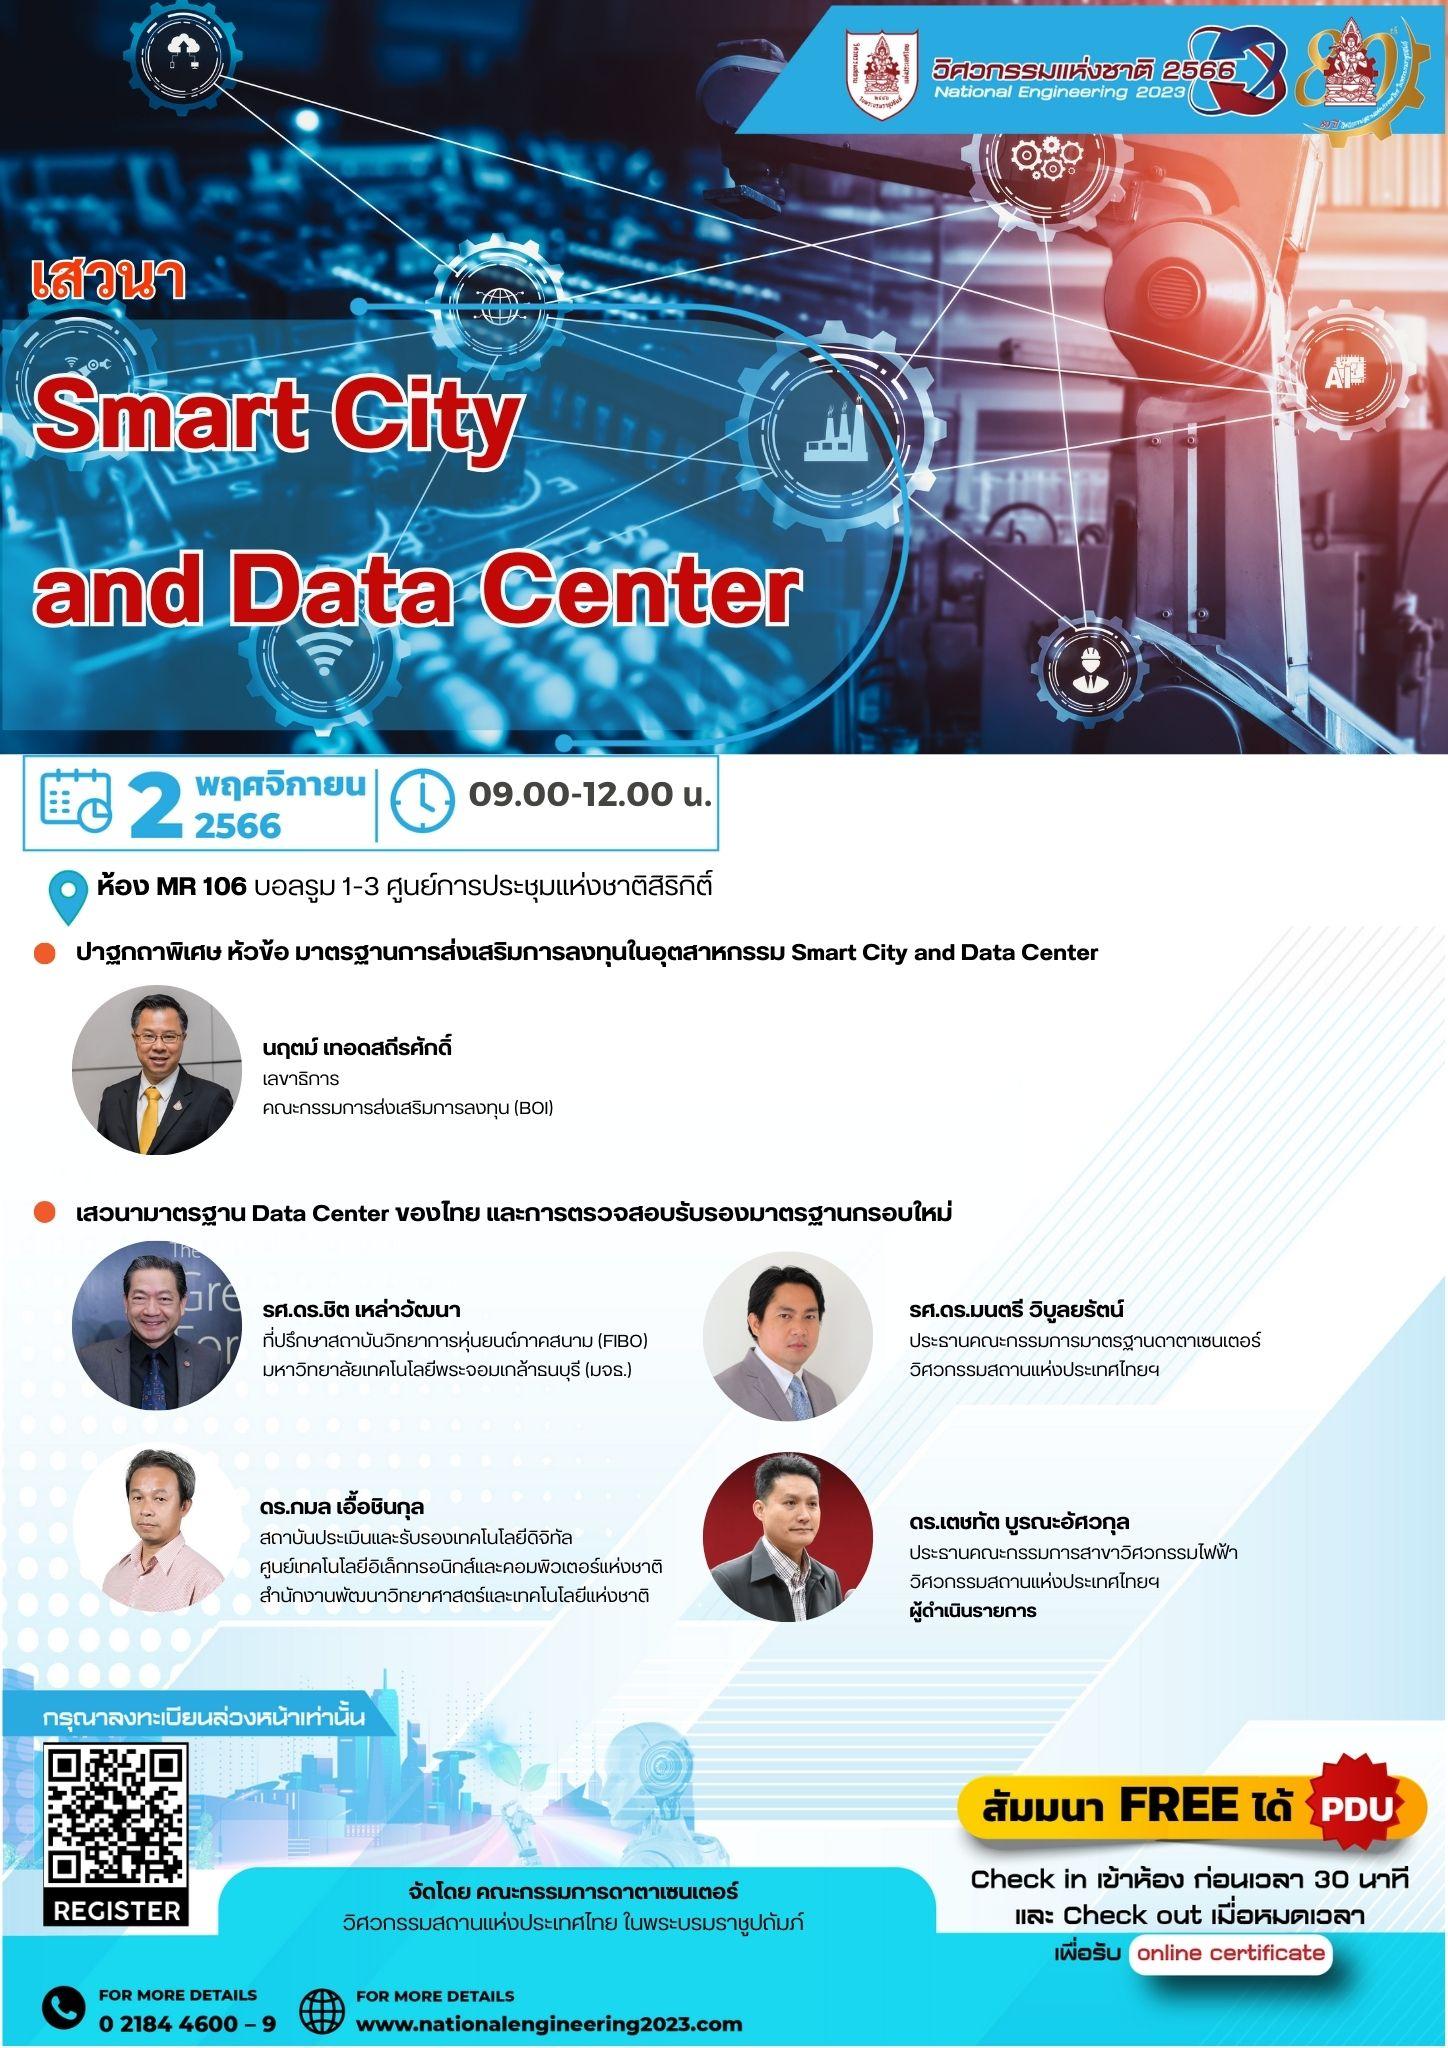 Smart City and Data Center - มาตรฐานการส่งเสริมการลงทุนในอุตสาหกรรม Smart City and Data Center